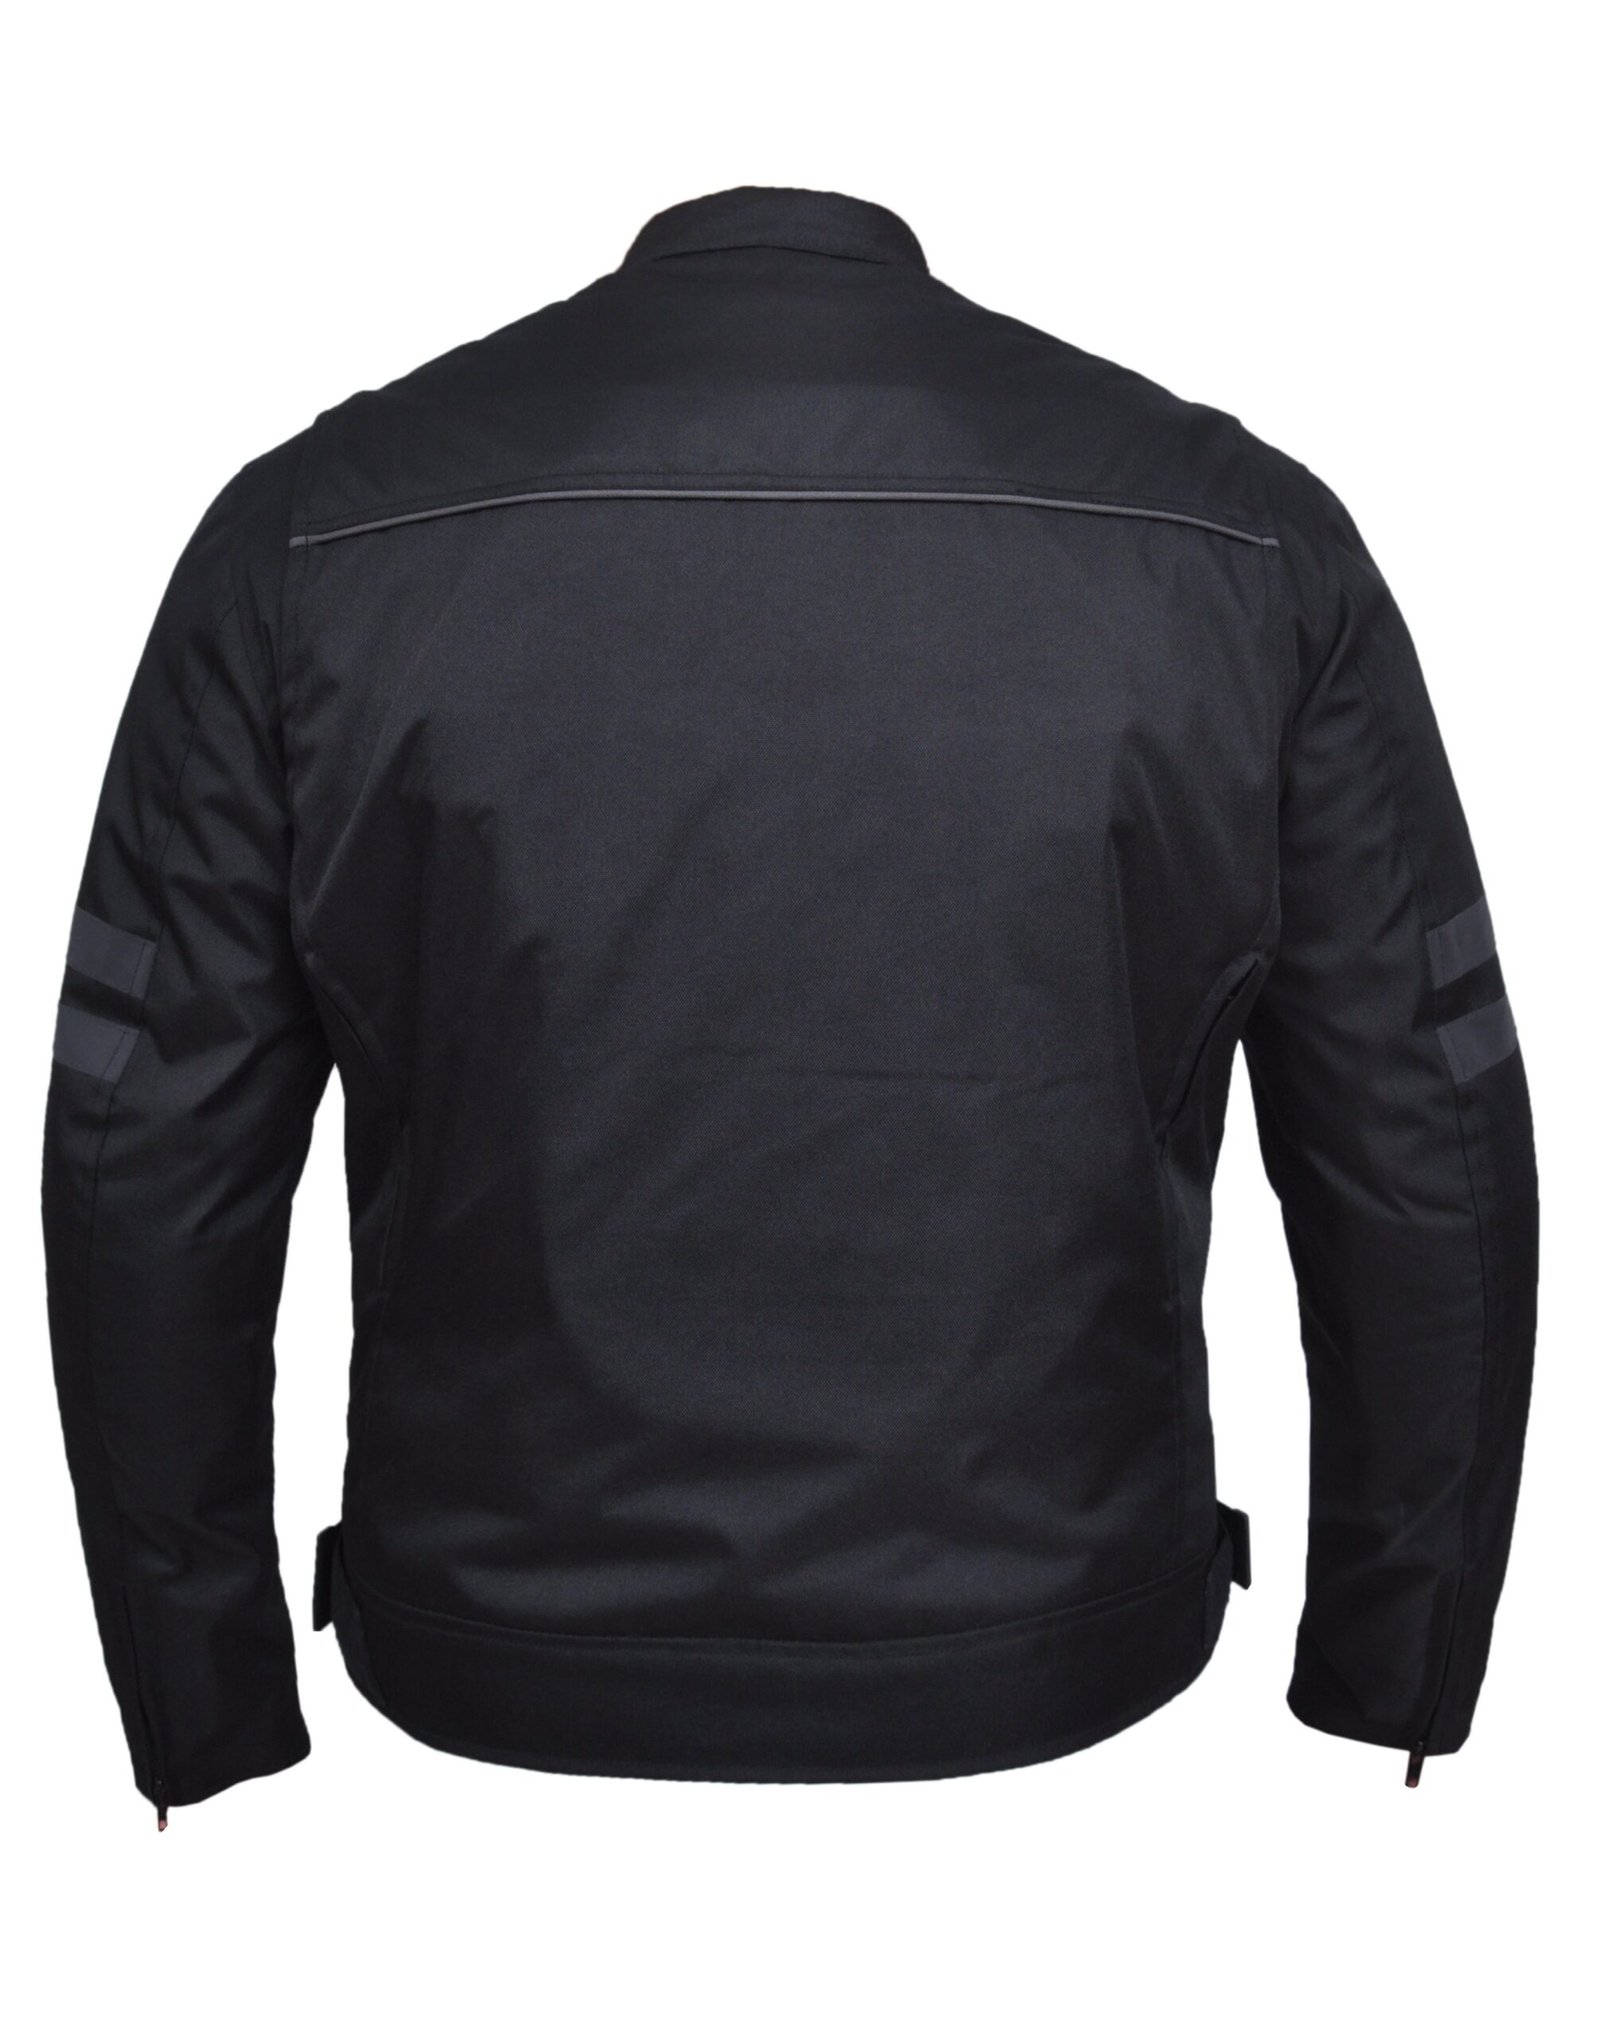 Men's Nylon Textile Racer Style Jacket -SKU K-2148-00-UN